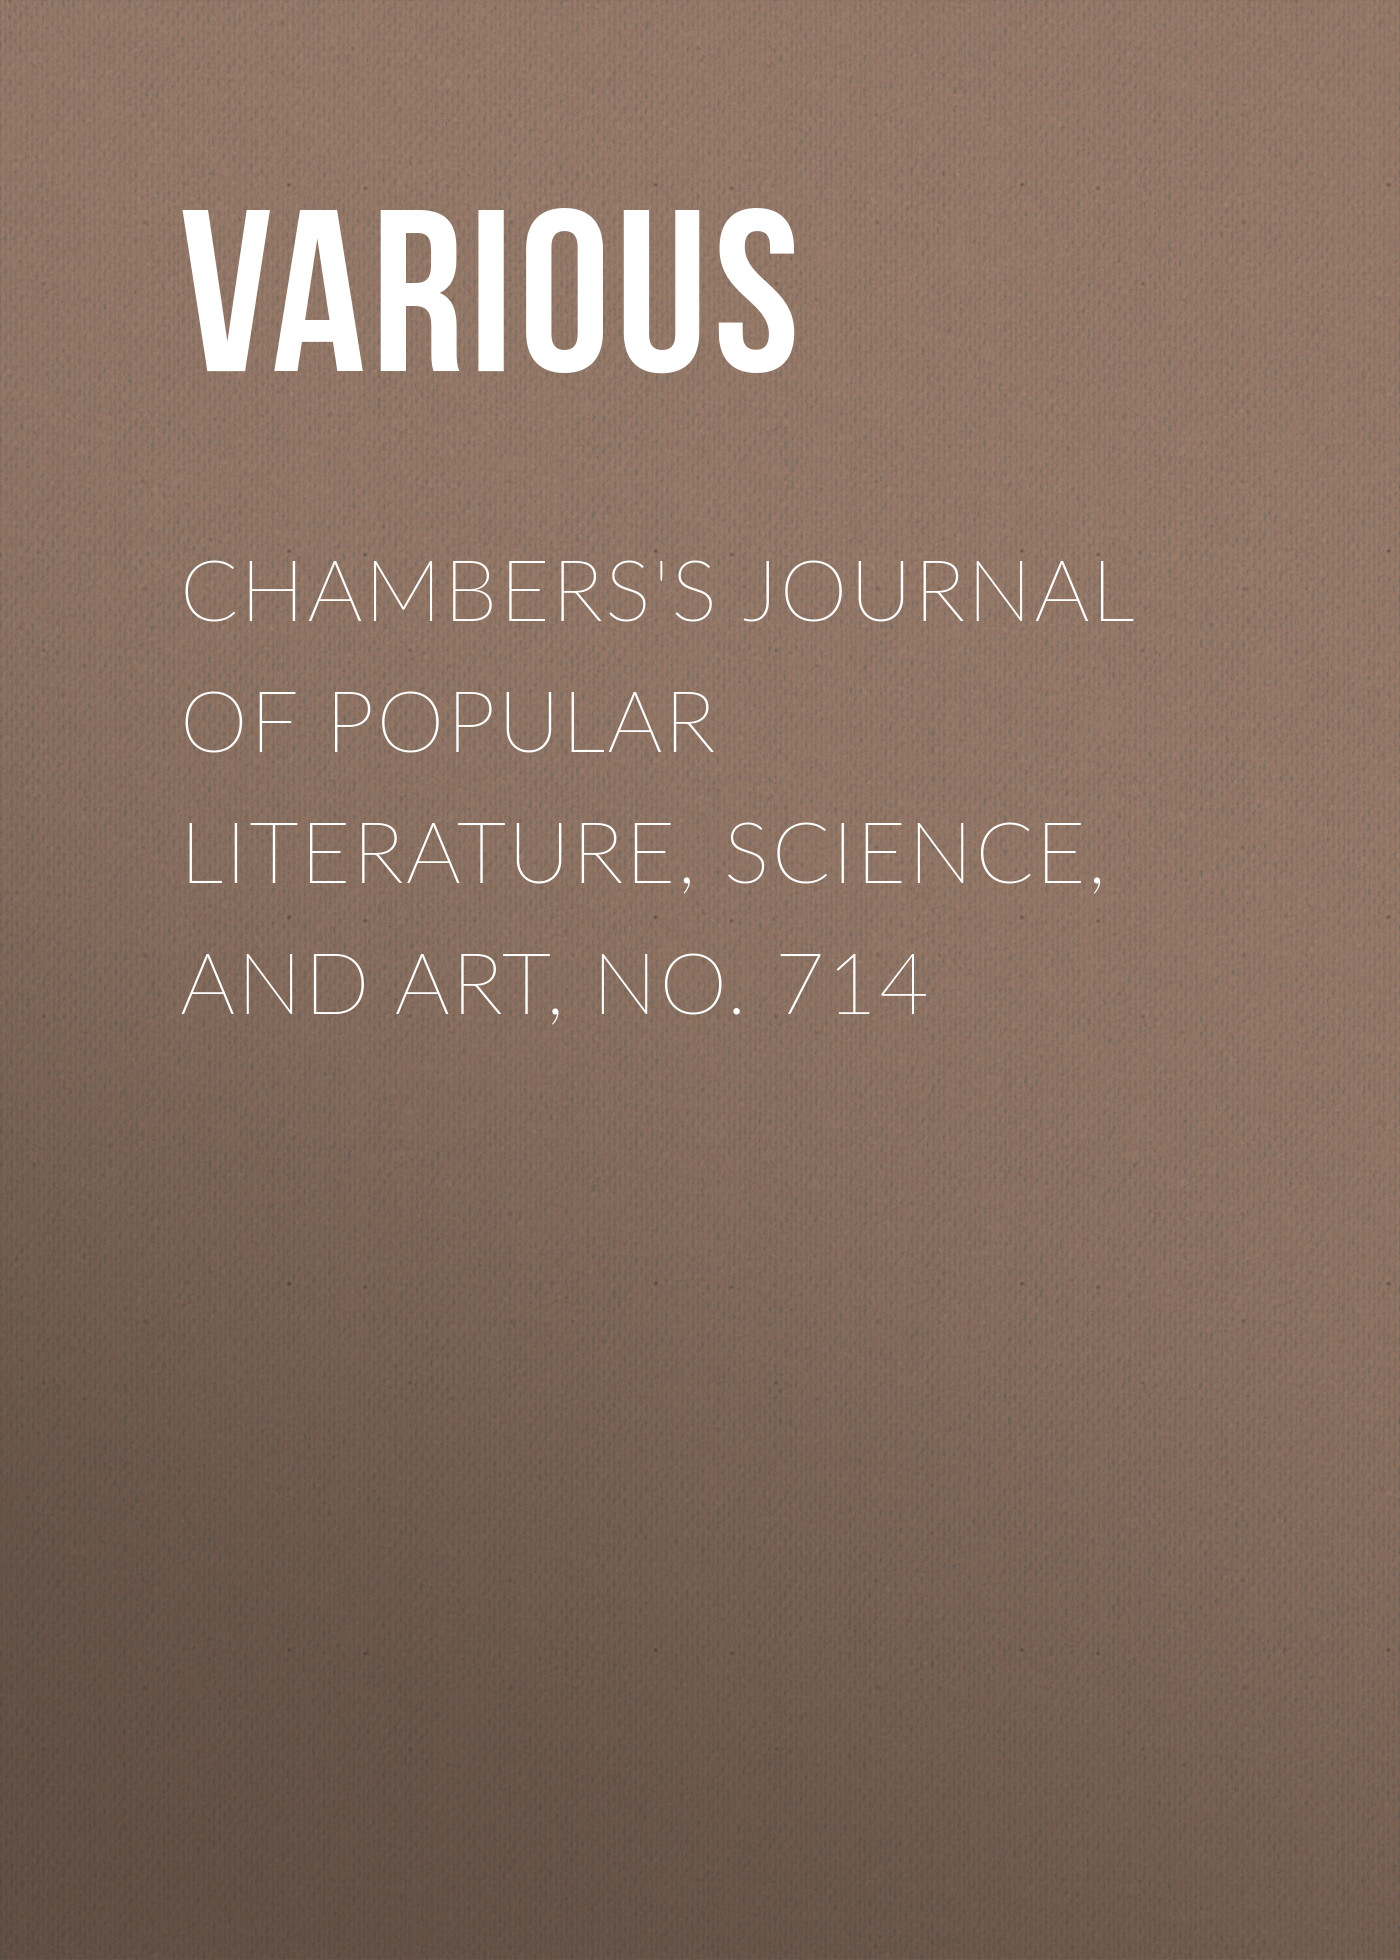 Книга Chambers's Journal of Popular Literature, Science, and Art, No. 714 из серии , созданная  Various, может относится к жанру Журналы, Зарубежная образовательная литература. Стоимость электронной книги Chambers's Journal of Popular Literature, Science, and Art, No. 714 с идентификатором 25569919 составляет 0 руб.